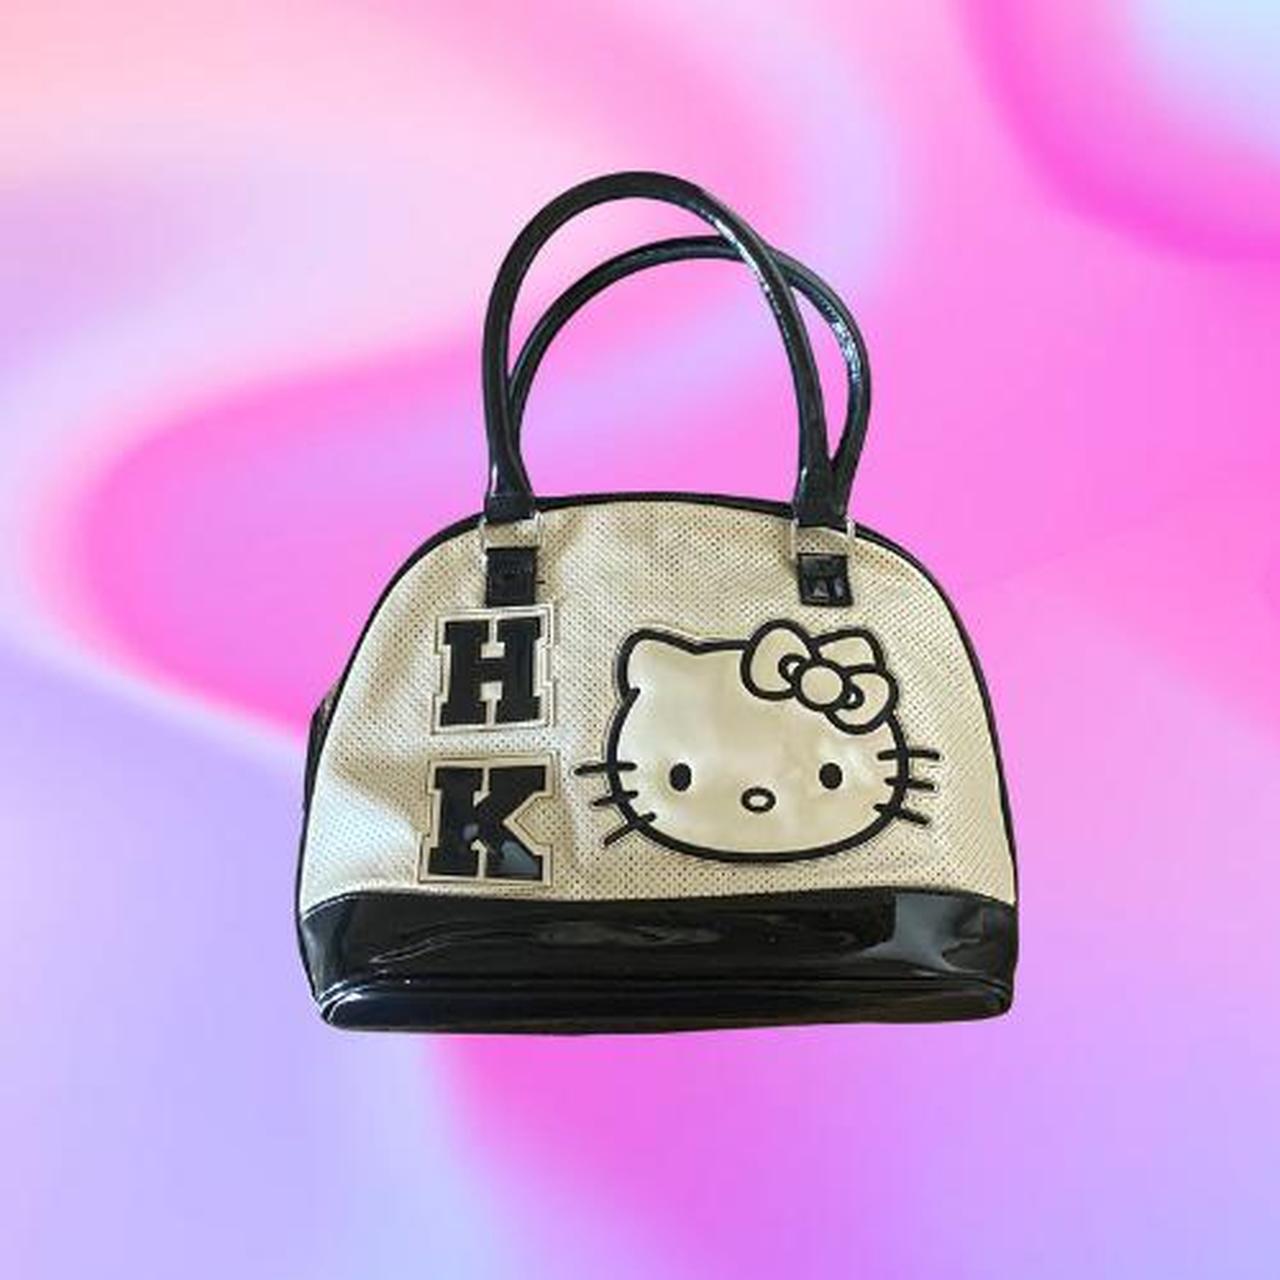 hello kitty purse vintage